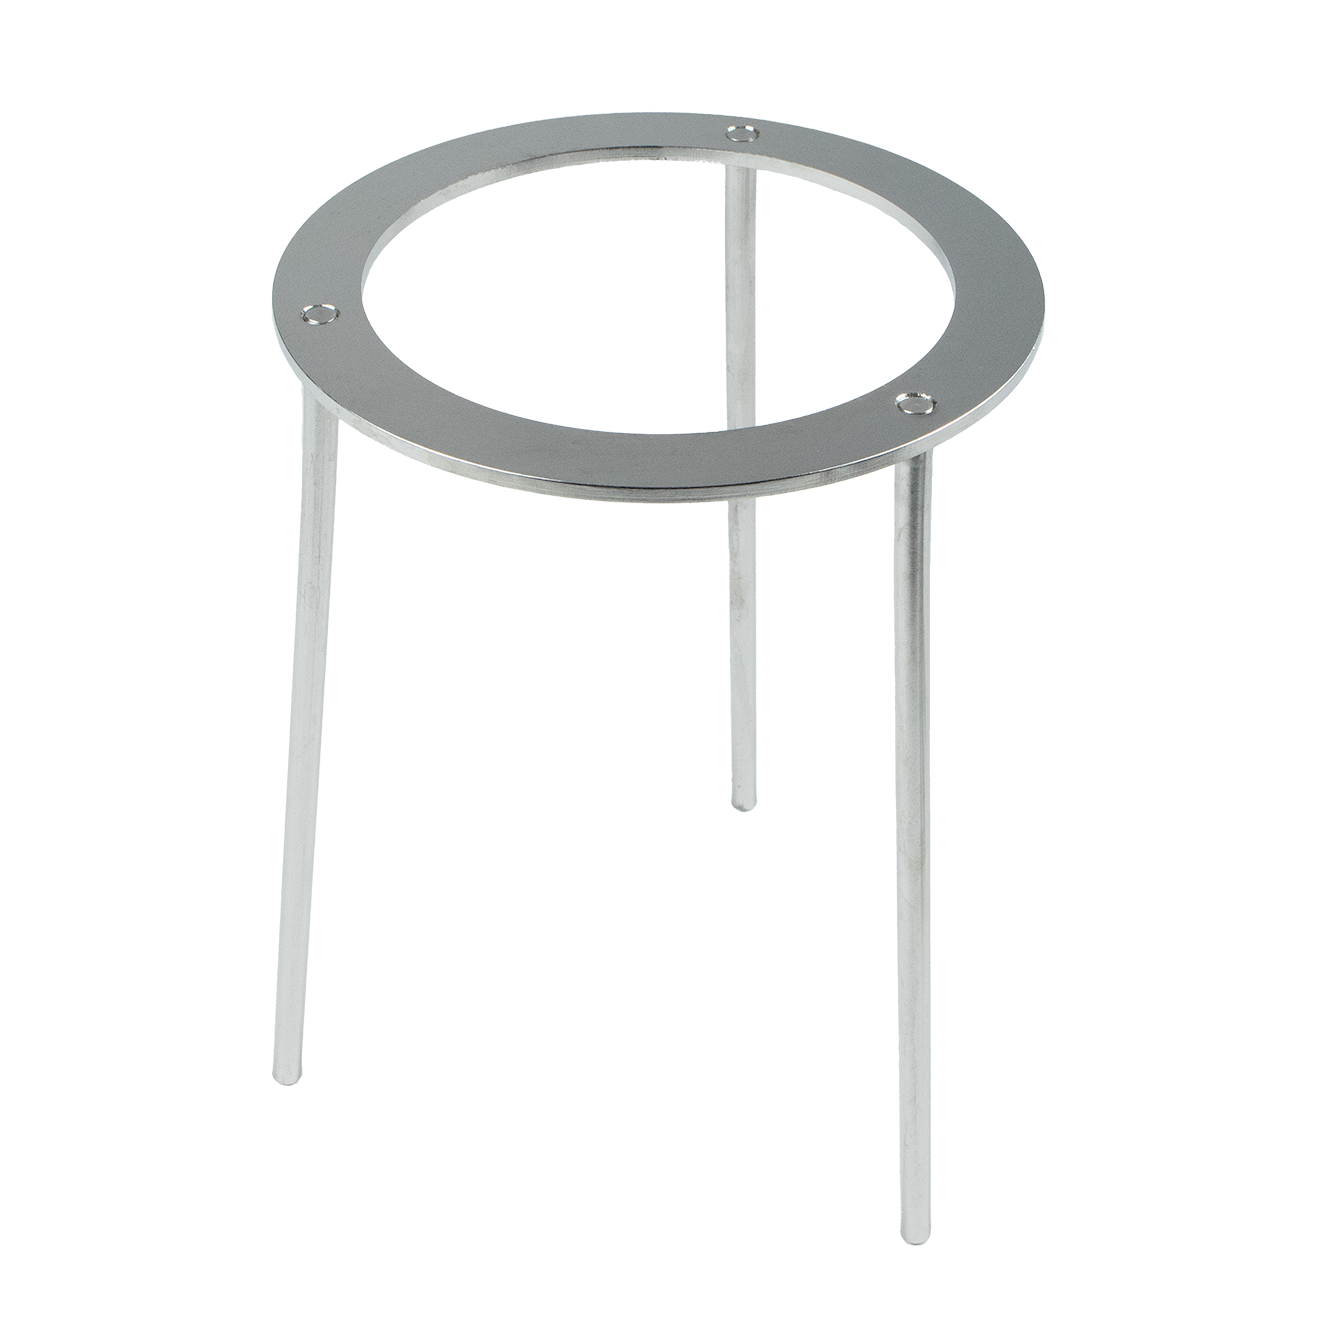 Tripod - height 220 mm, inner diameter 140 mm - stainless steel